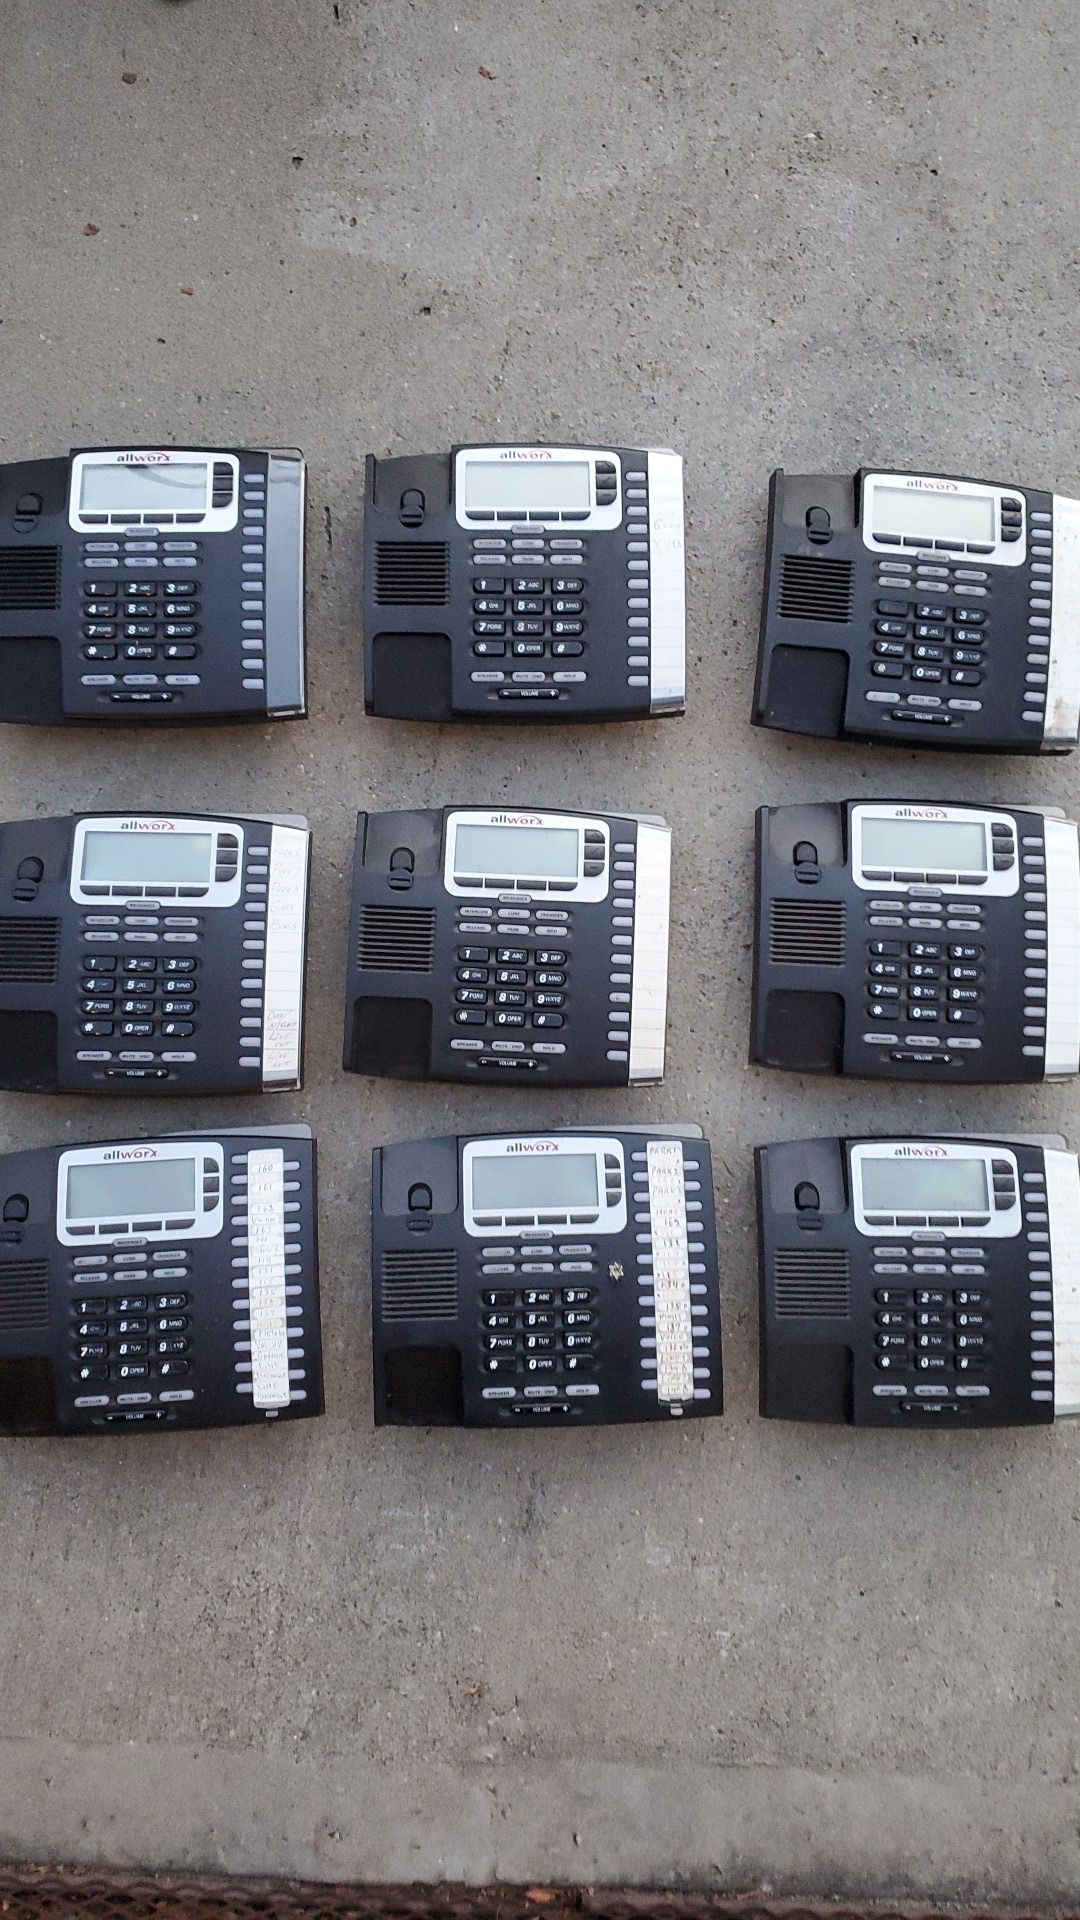 Allworx telephones model 9224 and 9212